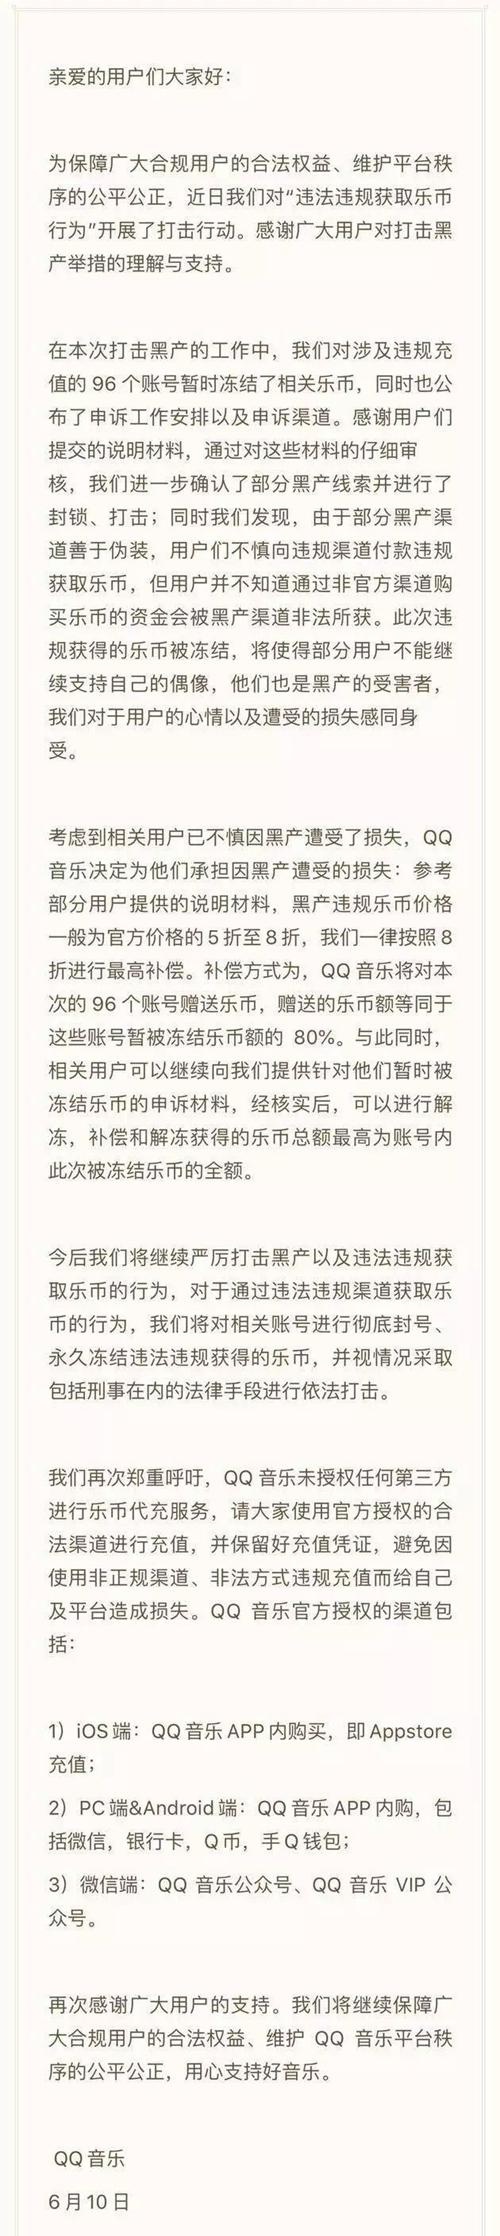 QQ音乐打击违规获取乐币 部分网友称被无辜波及